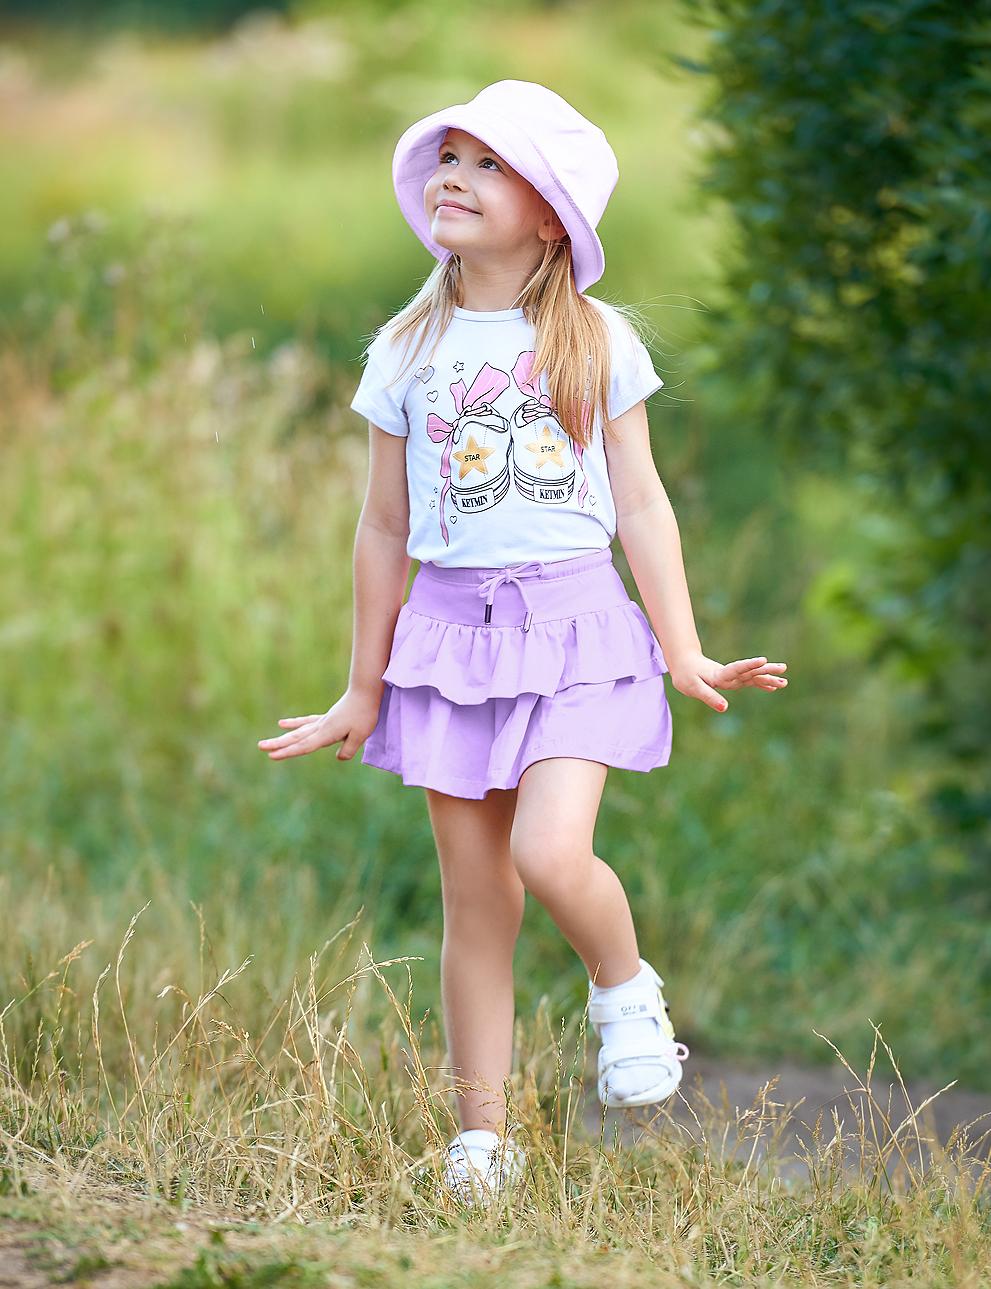 Детская юбка-шорты KETMIN Bright Summer цв.Сиреневый